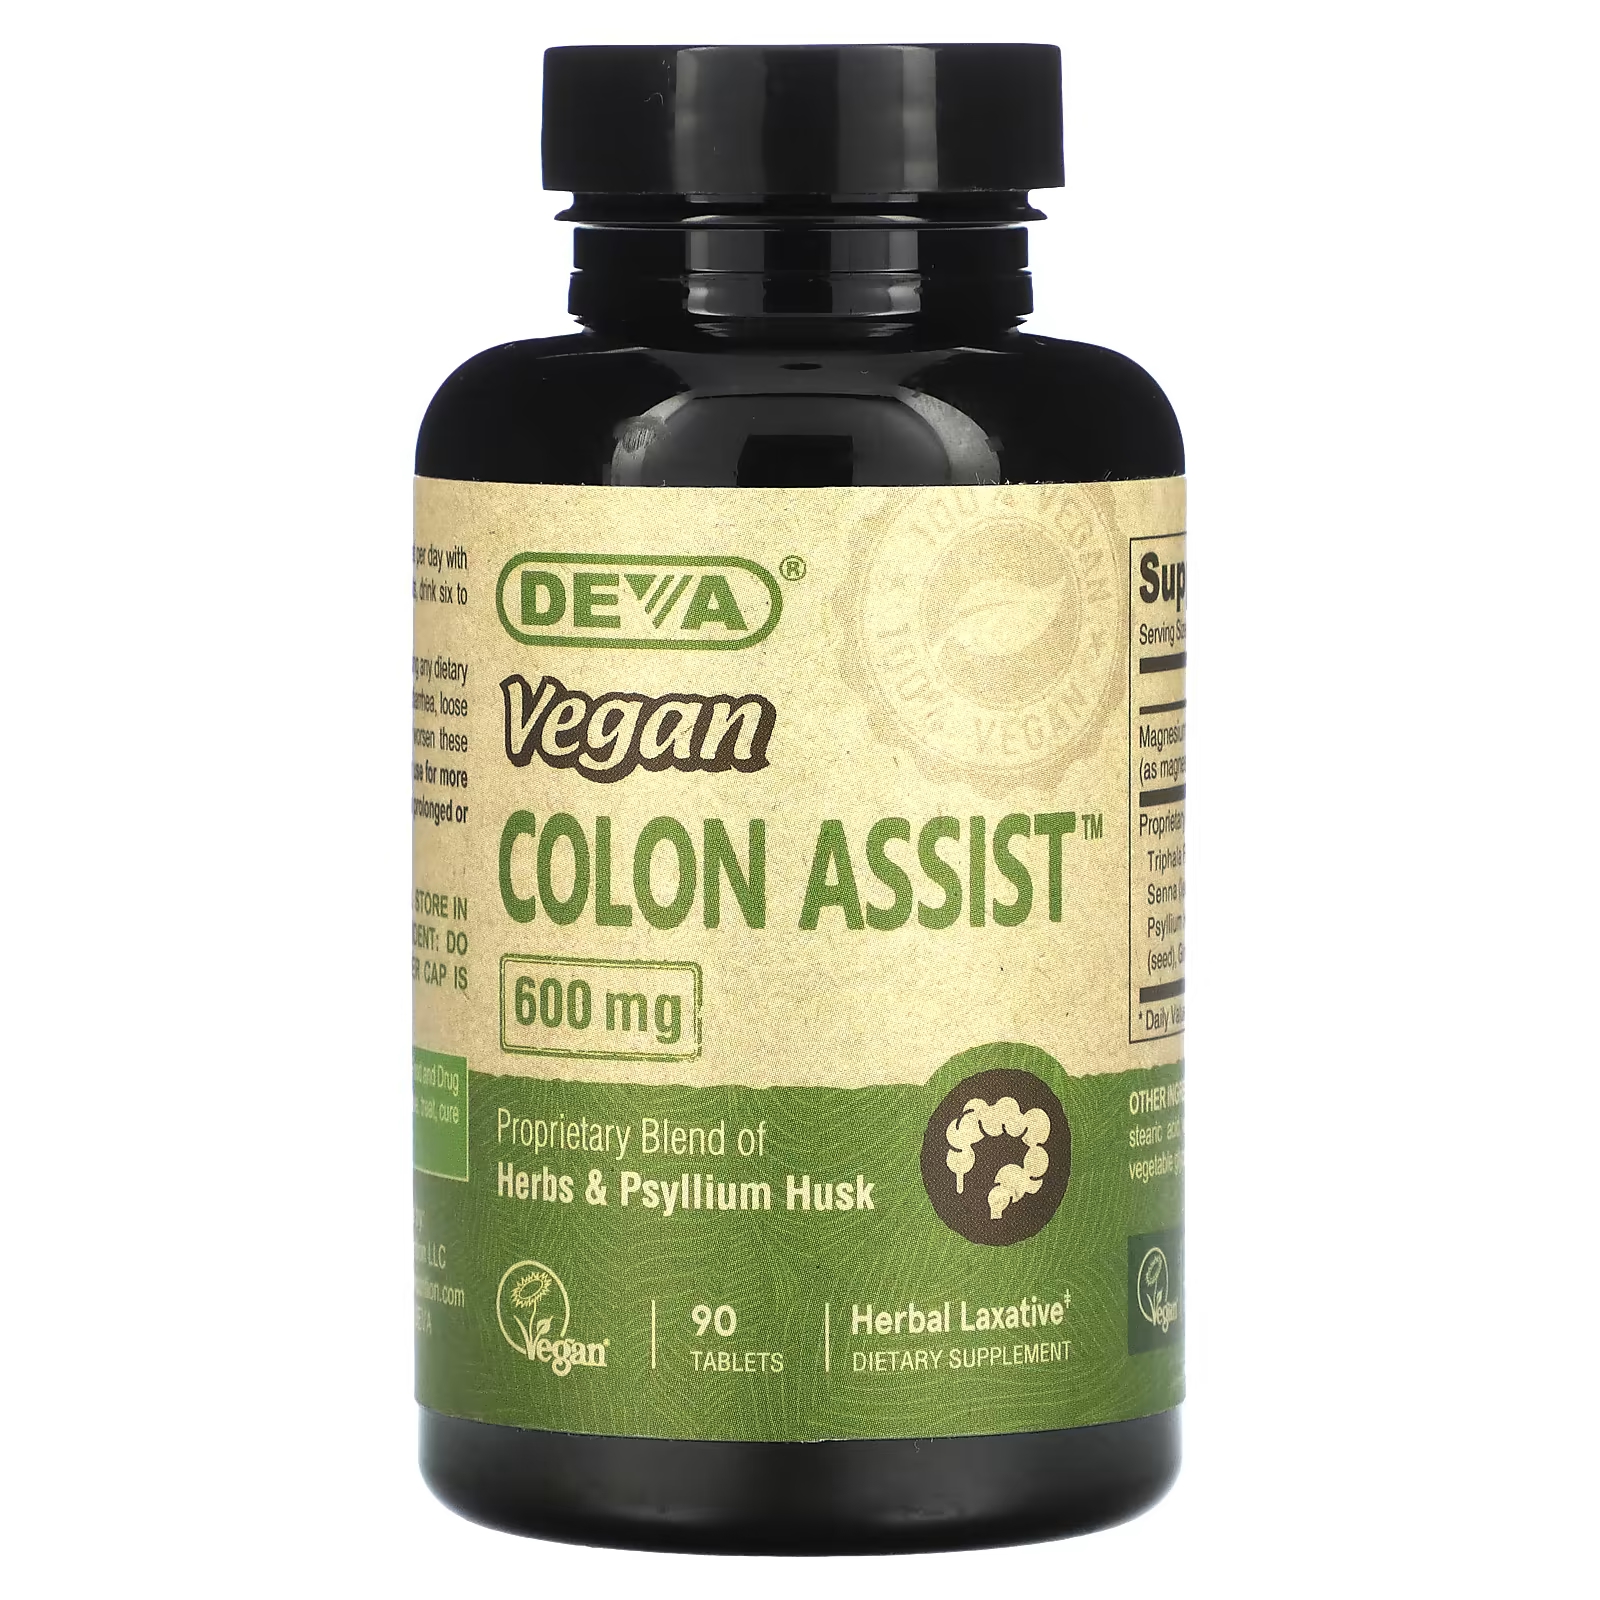 Пищевая добавка Deva Vegan Colon Assist 600 мг, 90 таблеток deva веганская печеночная добавка 675 мг 90 таблеток